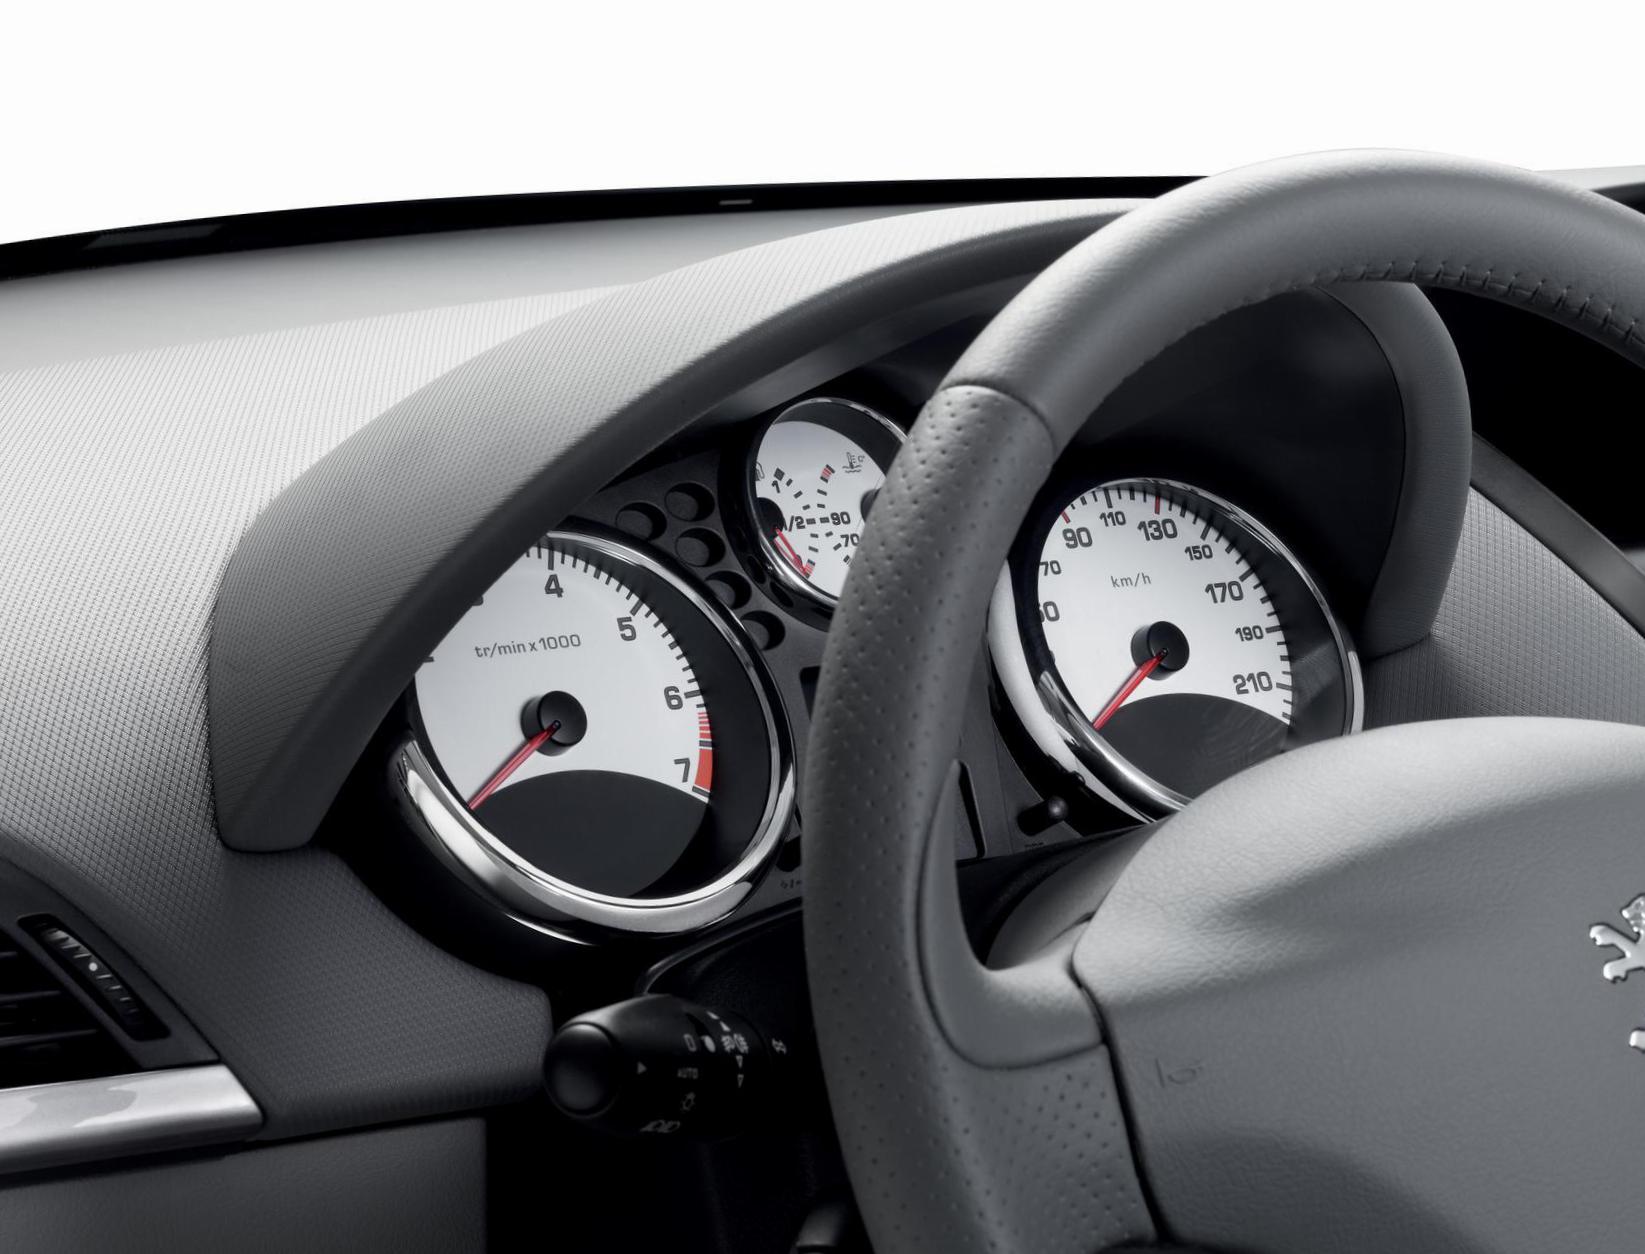 Peugeot 207 5 doors spec 2014